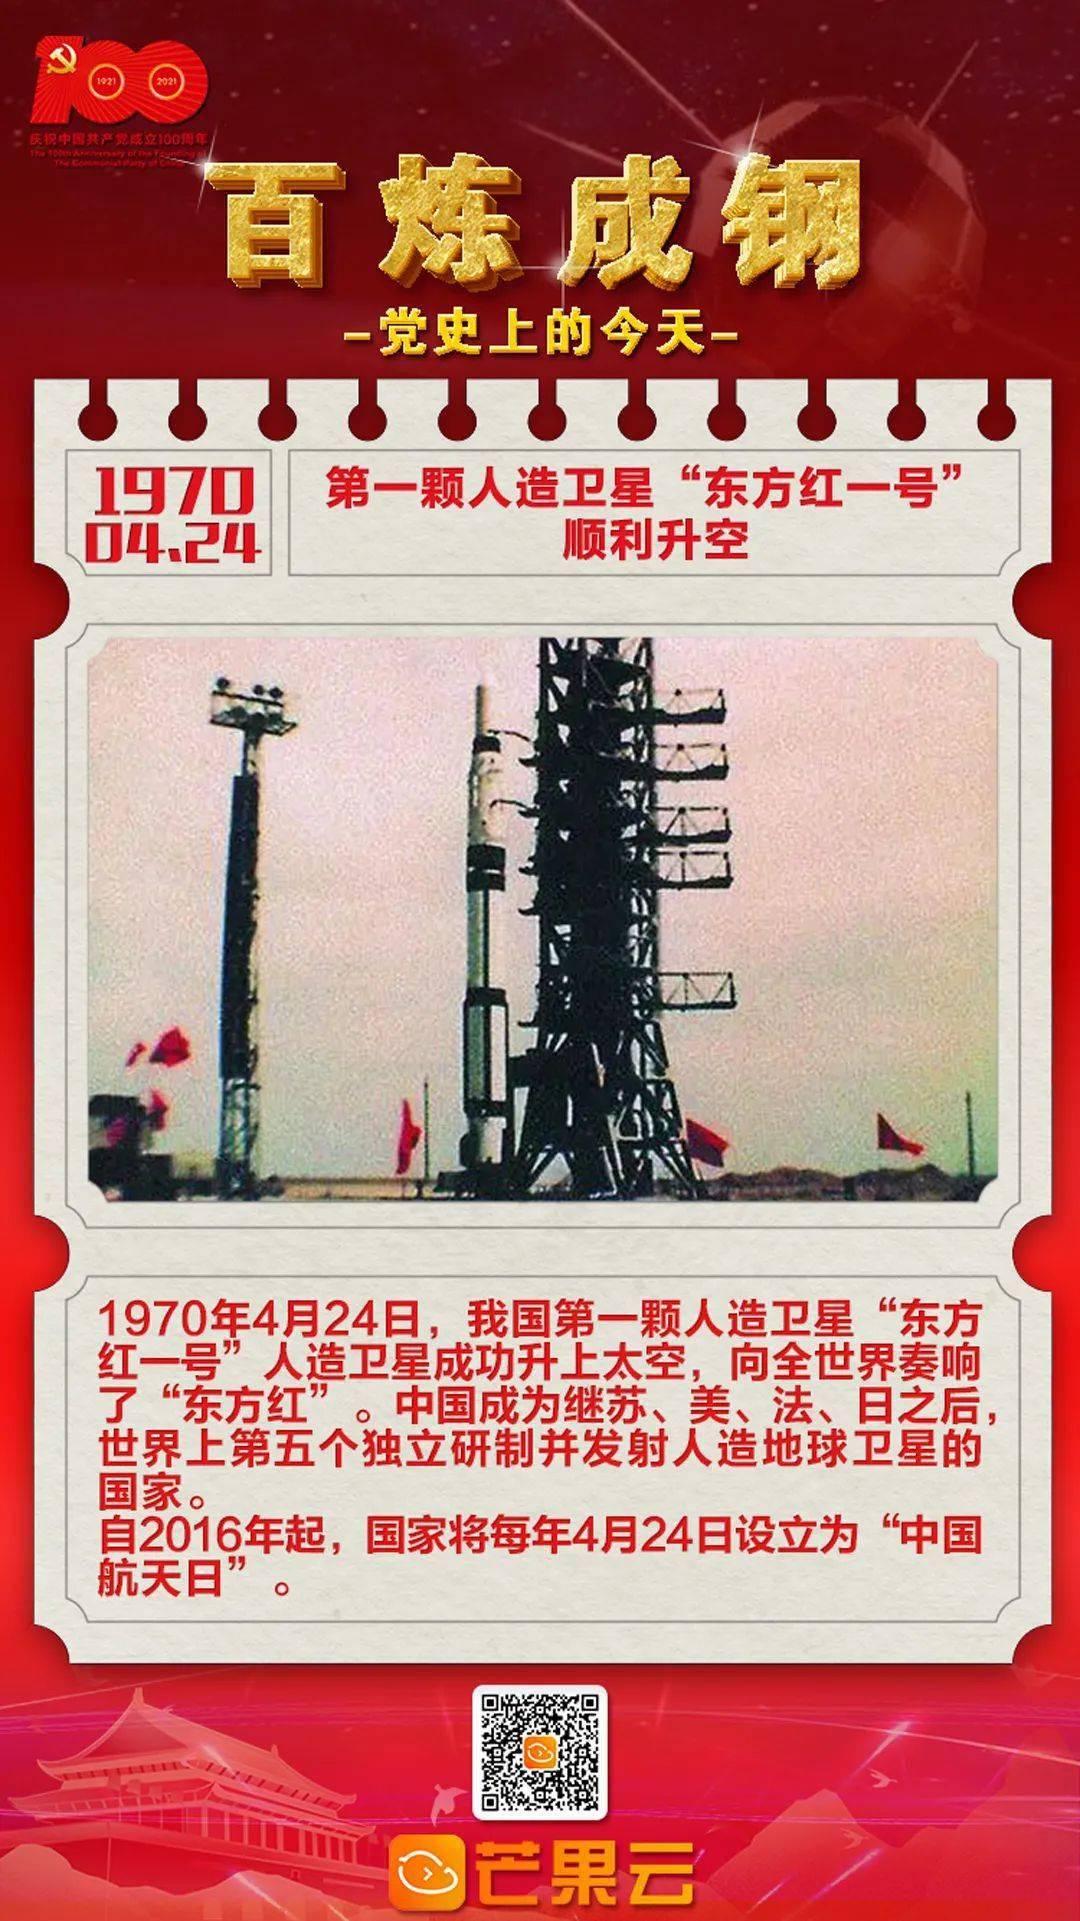 百炼成钢 党史上的今天 1970年4月24日 第一颗人造卫星 东方红一号 顺利升空 发射